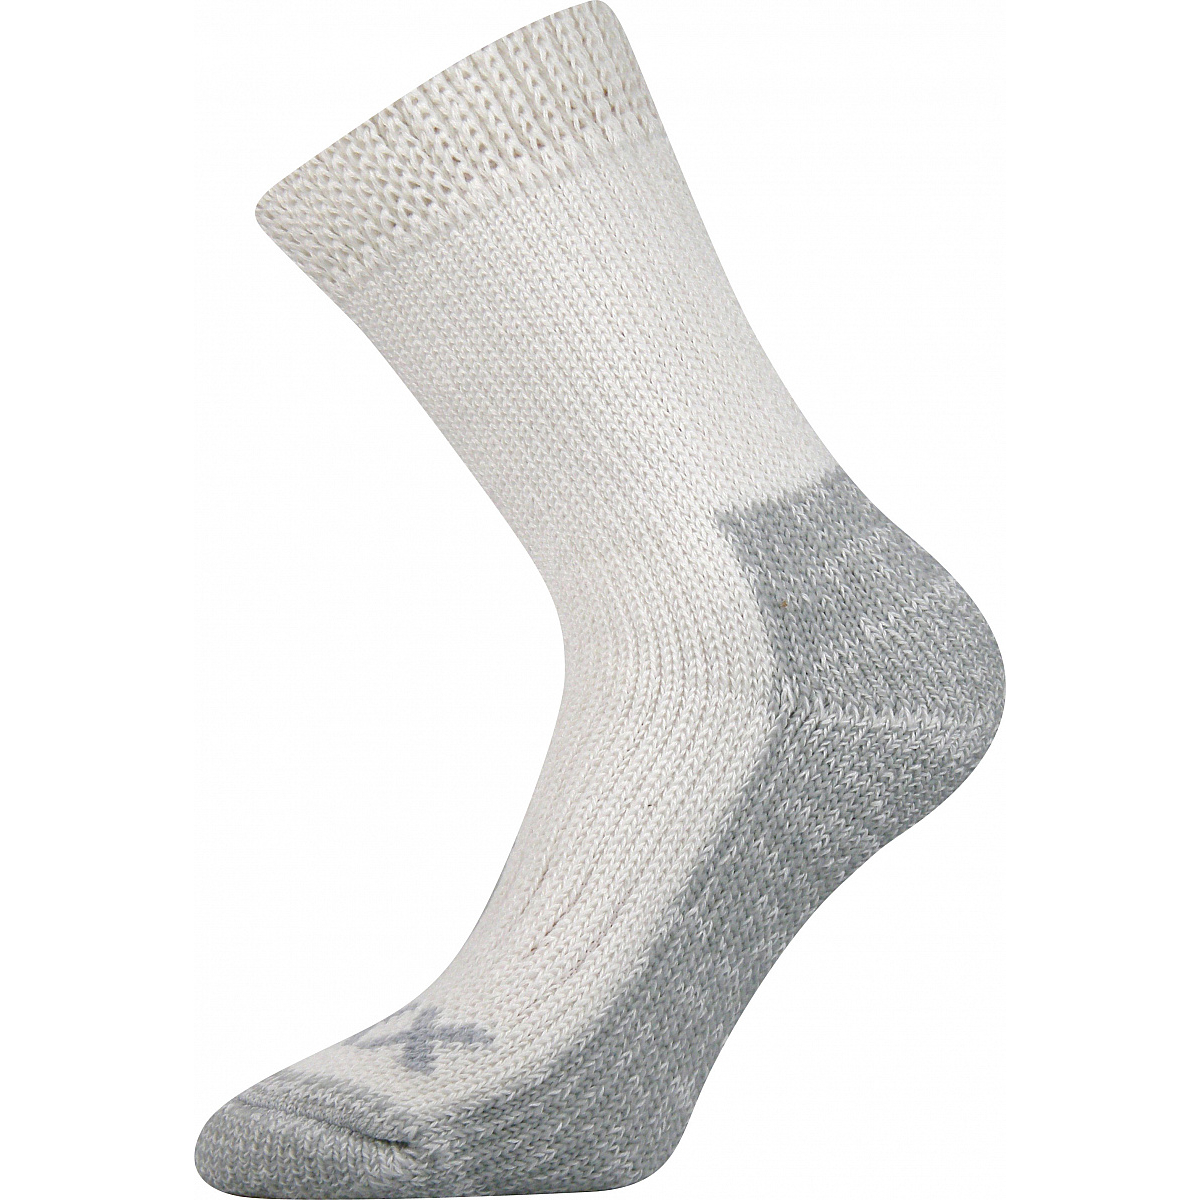 Extra teplé vlněné ponožky Voxx Alpin - bílé-šedé, 43-46